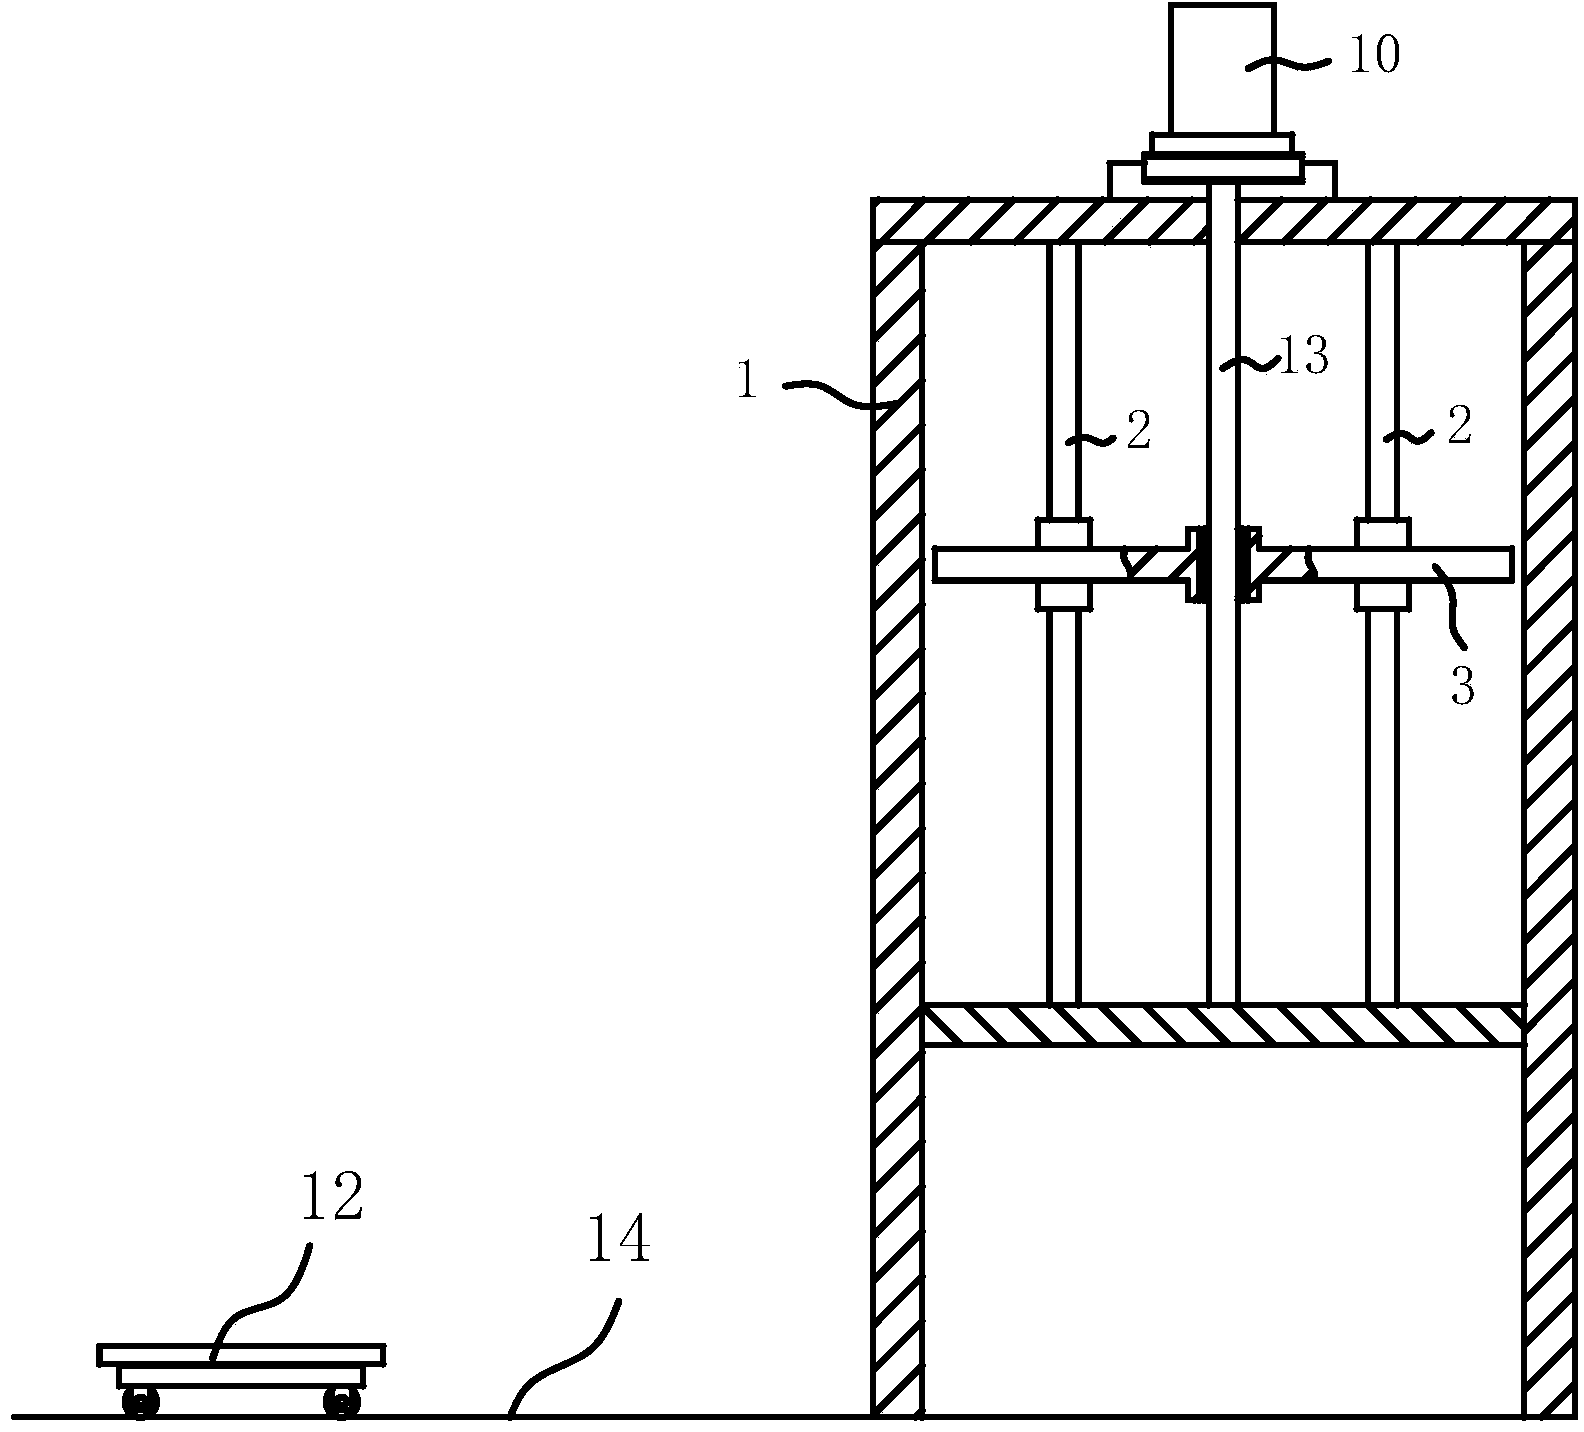 Multi-drill-bit graphite machining equipment